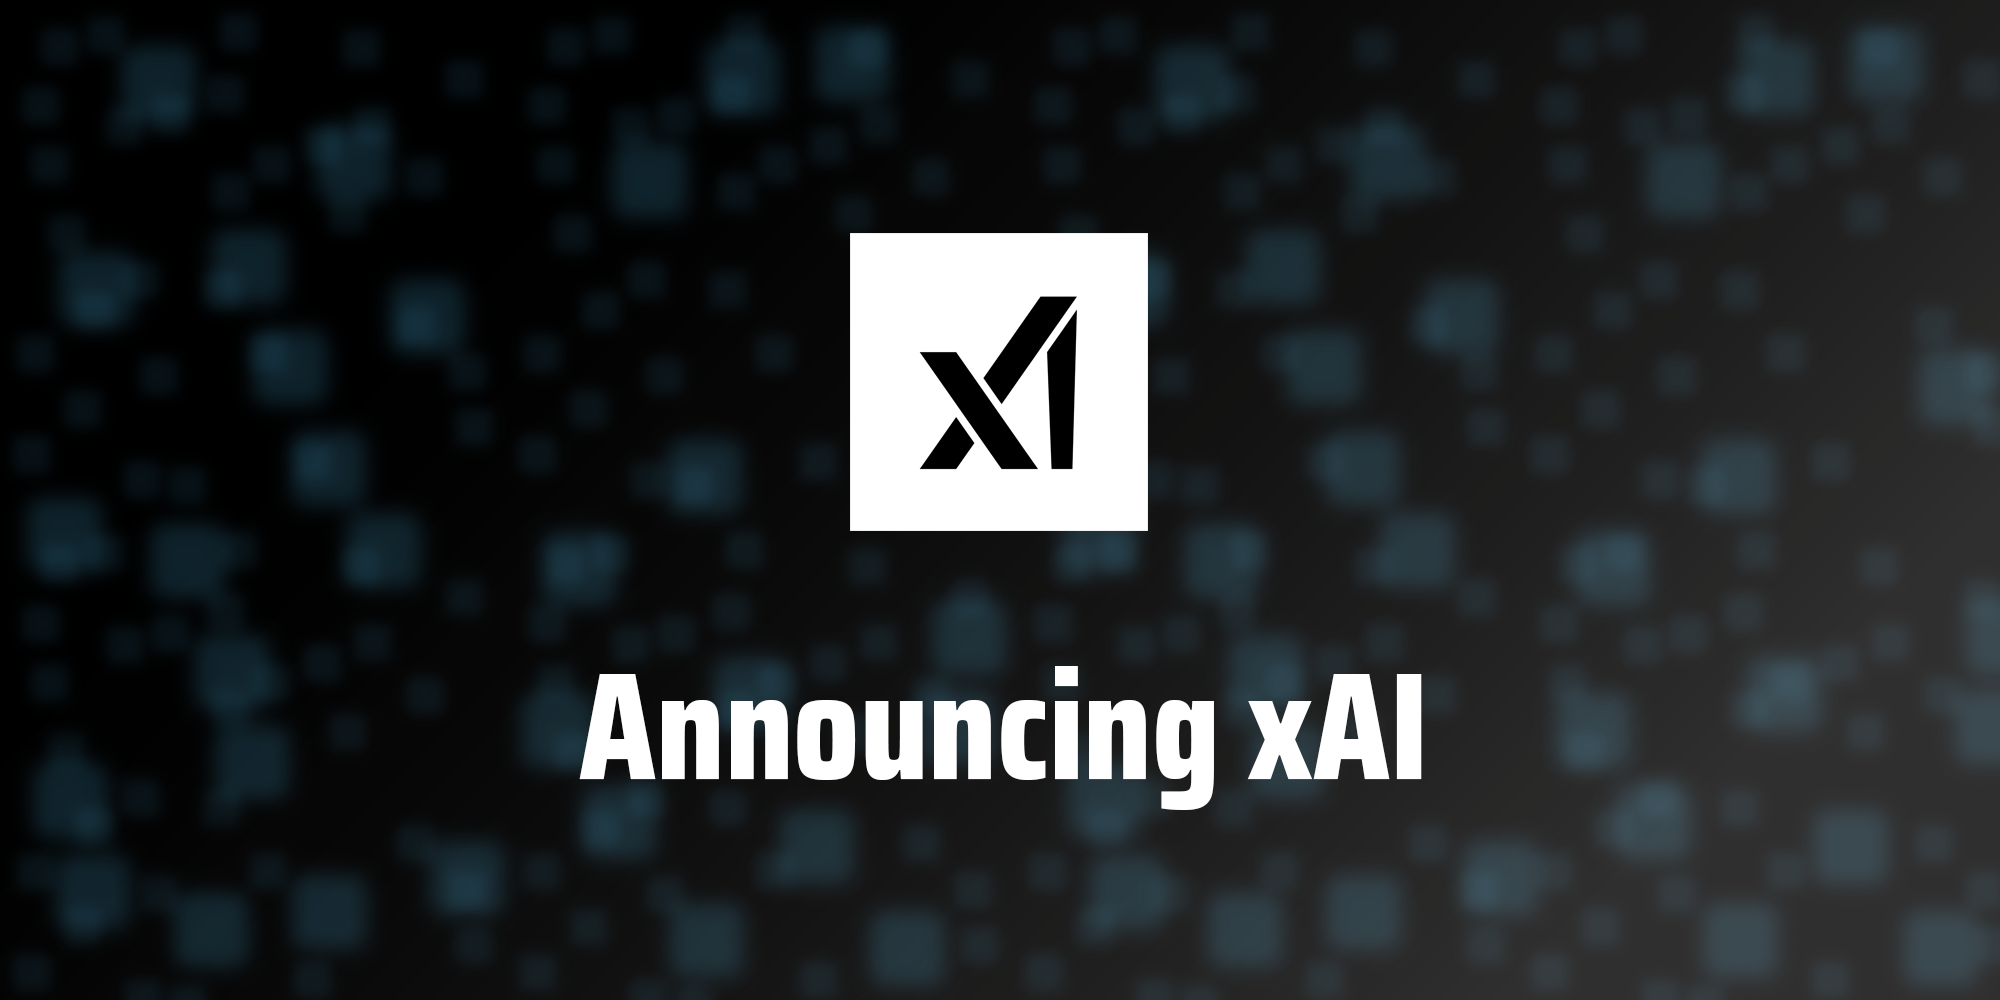 xAI släpper sin första modell för artificiell intelligens för en "utvald grupp användare